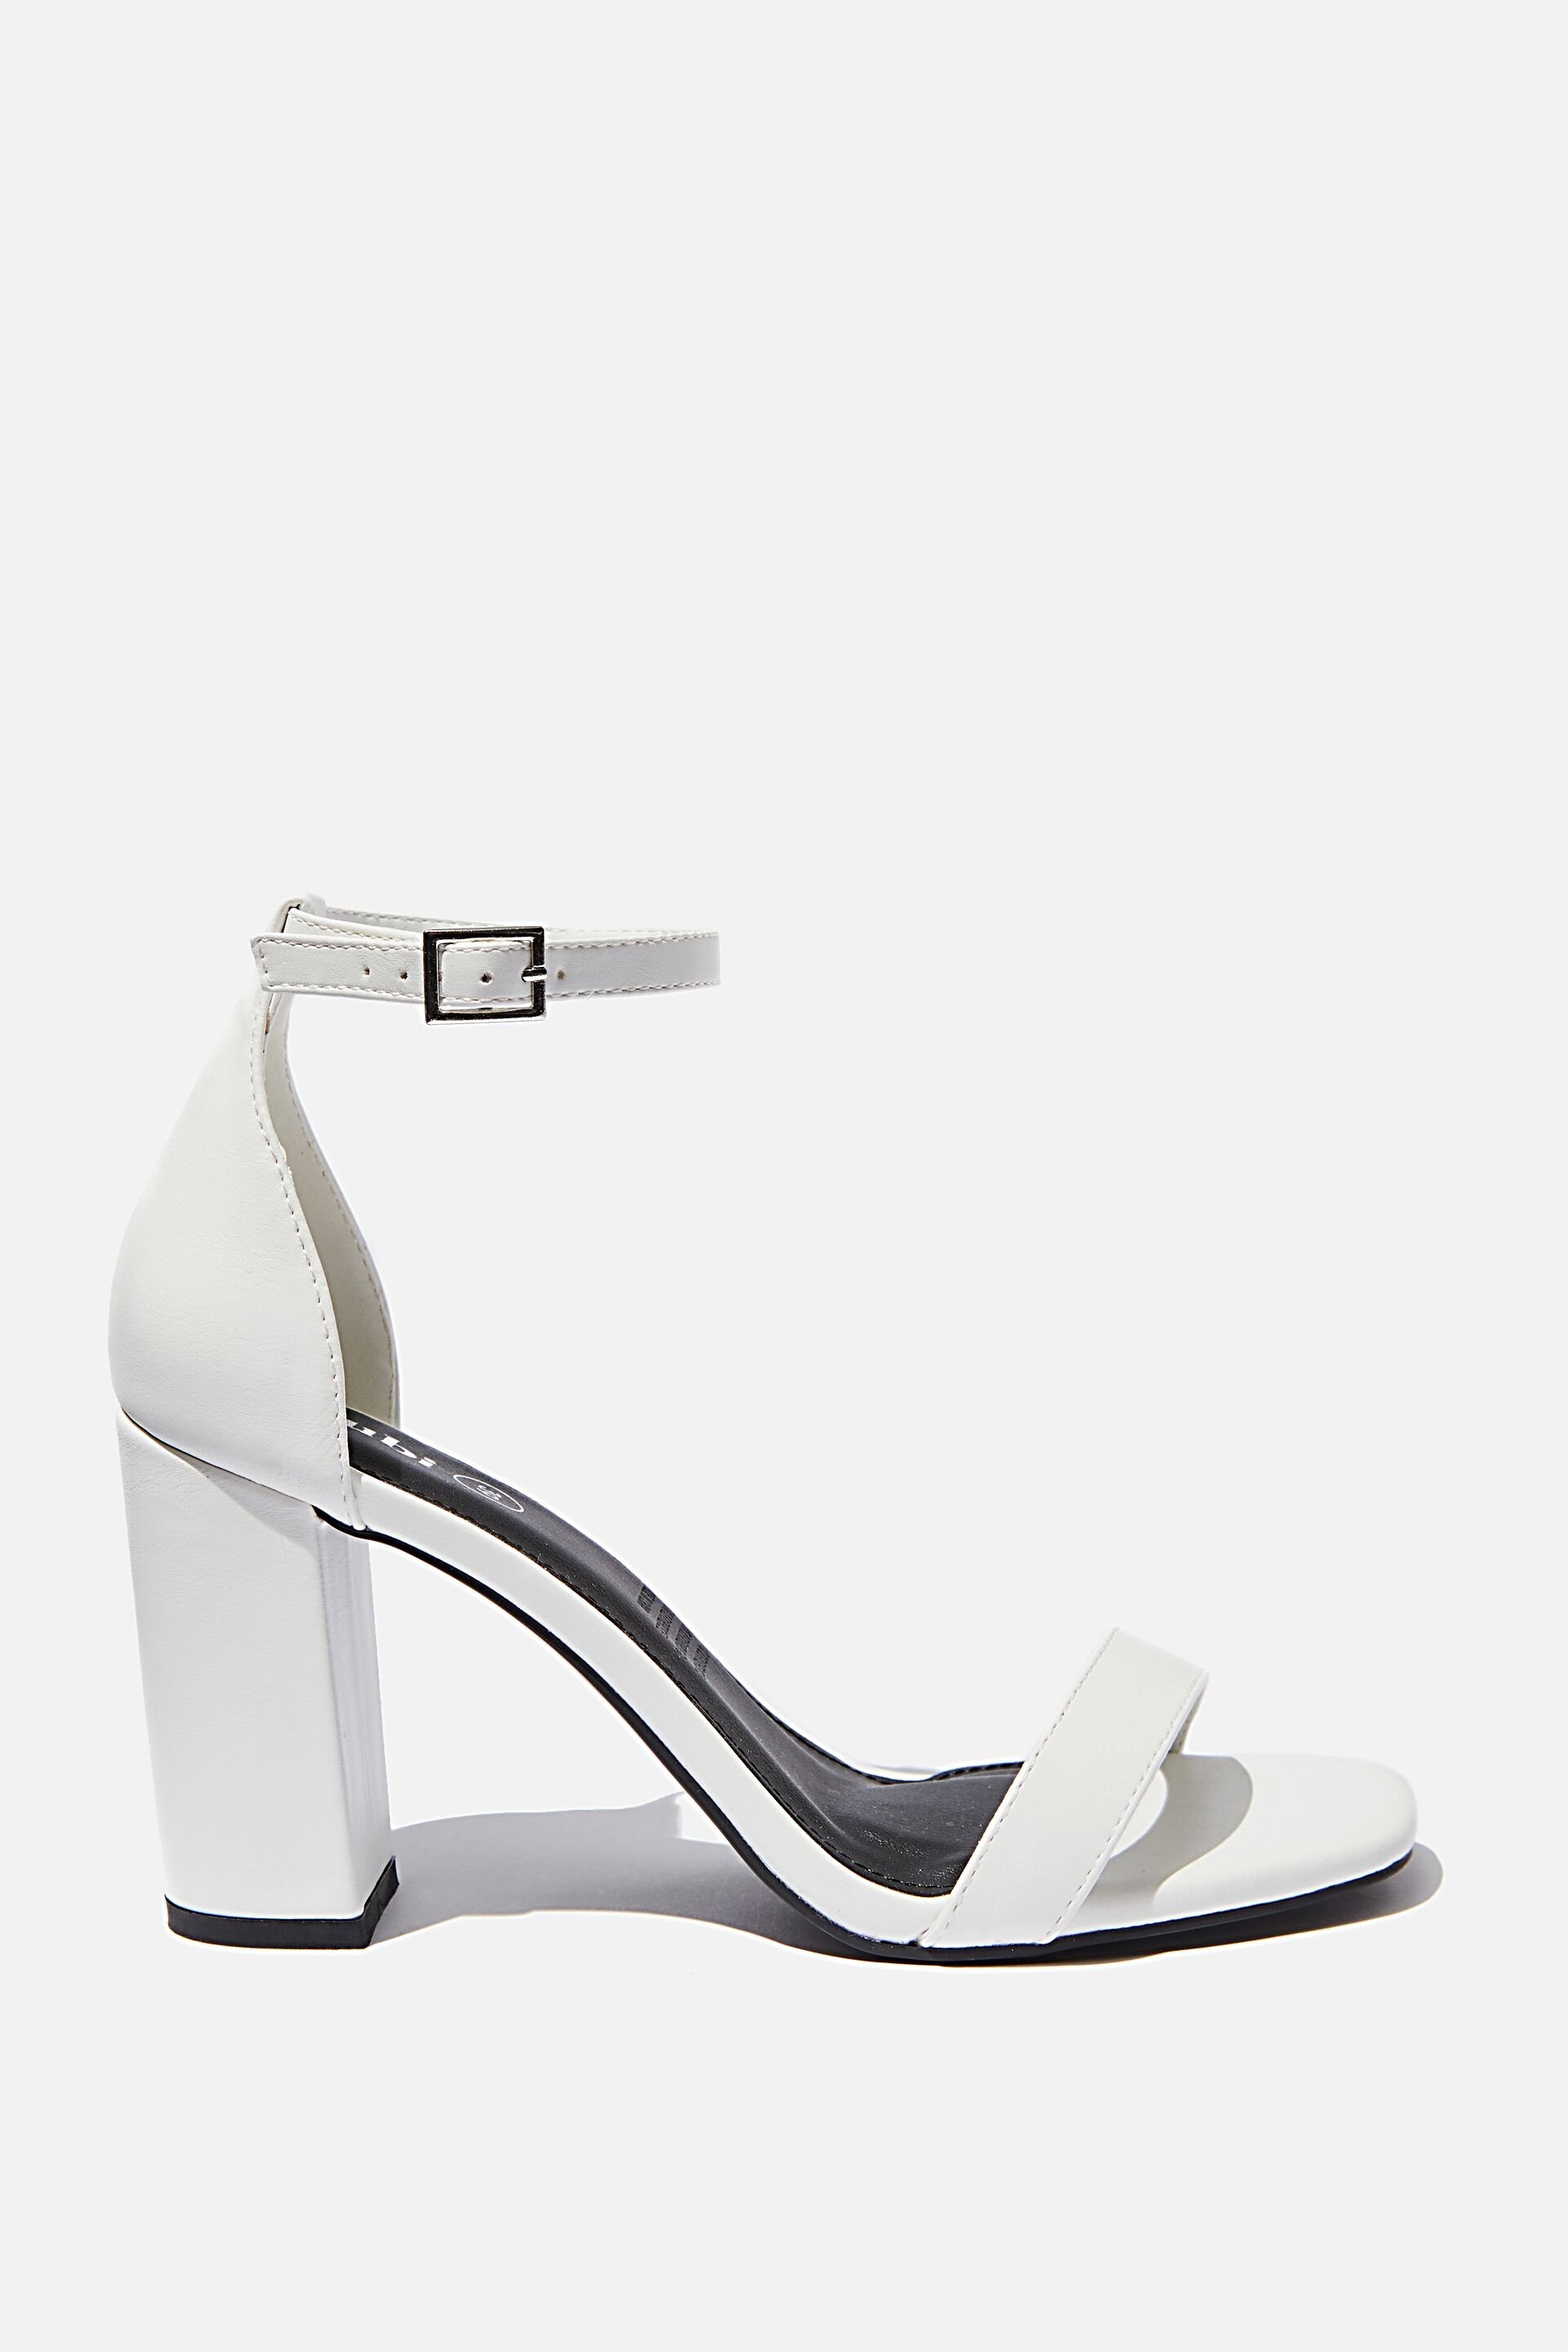 white small block heels